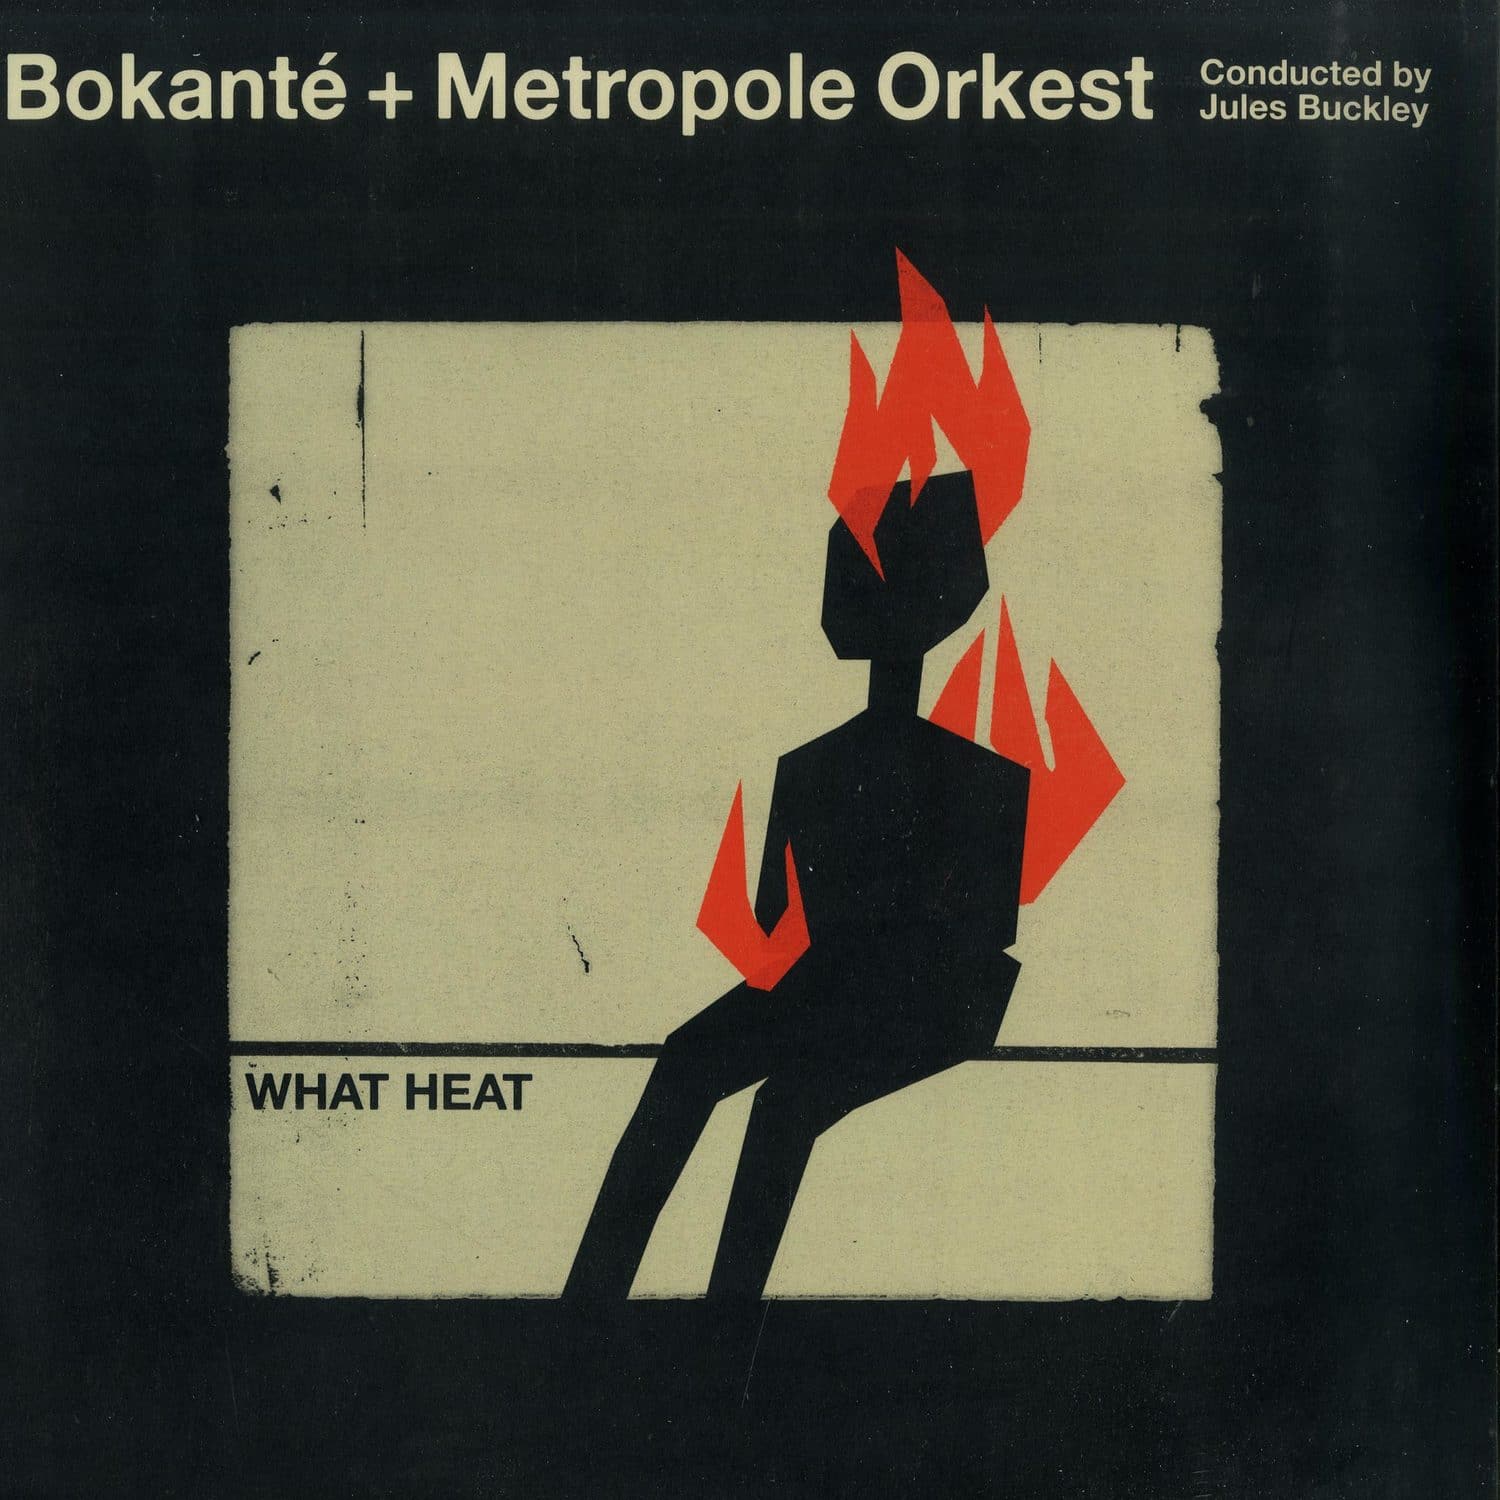 Bokante & Metropole Orkest & Jules Buckleye - WHAT HEAT 